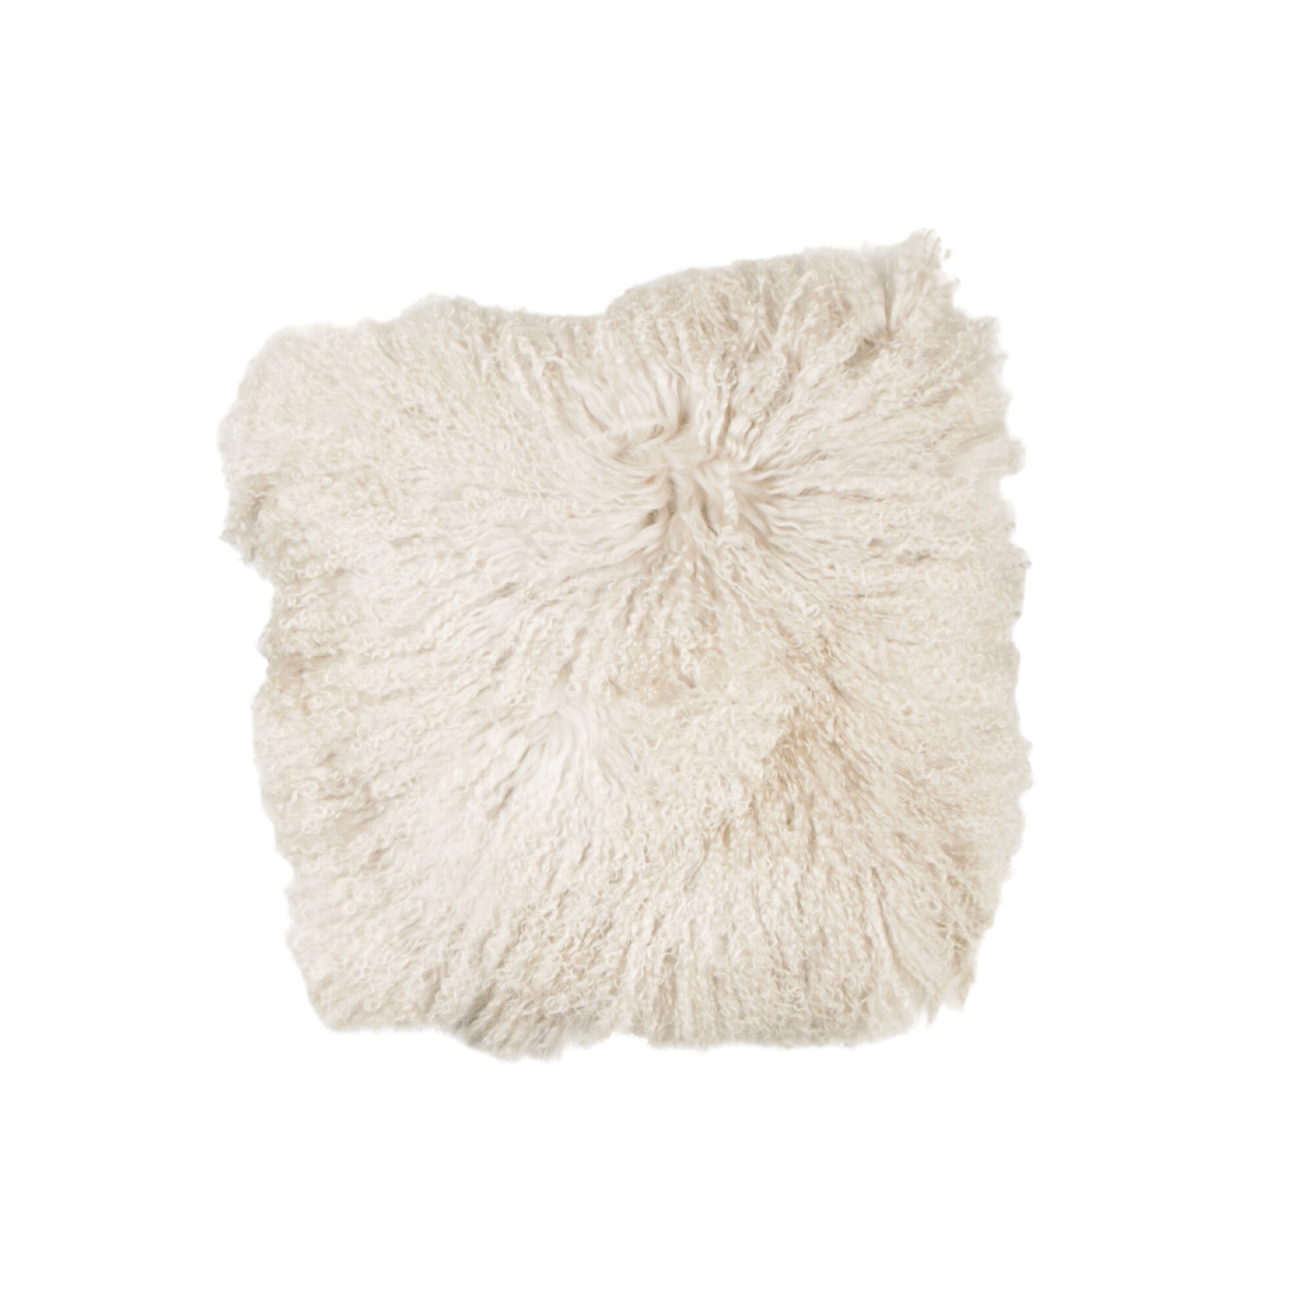 Tibetan sheepskin cushion